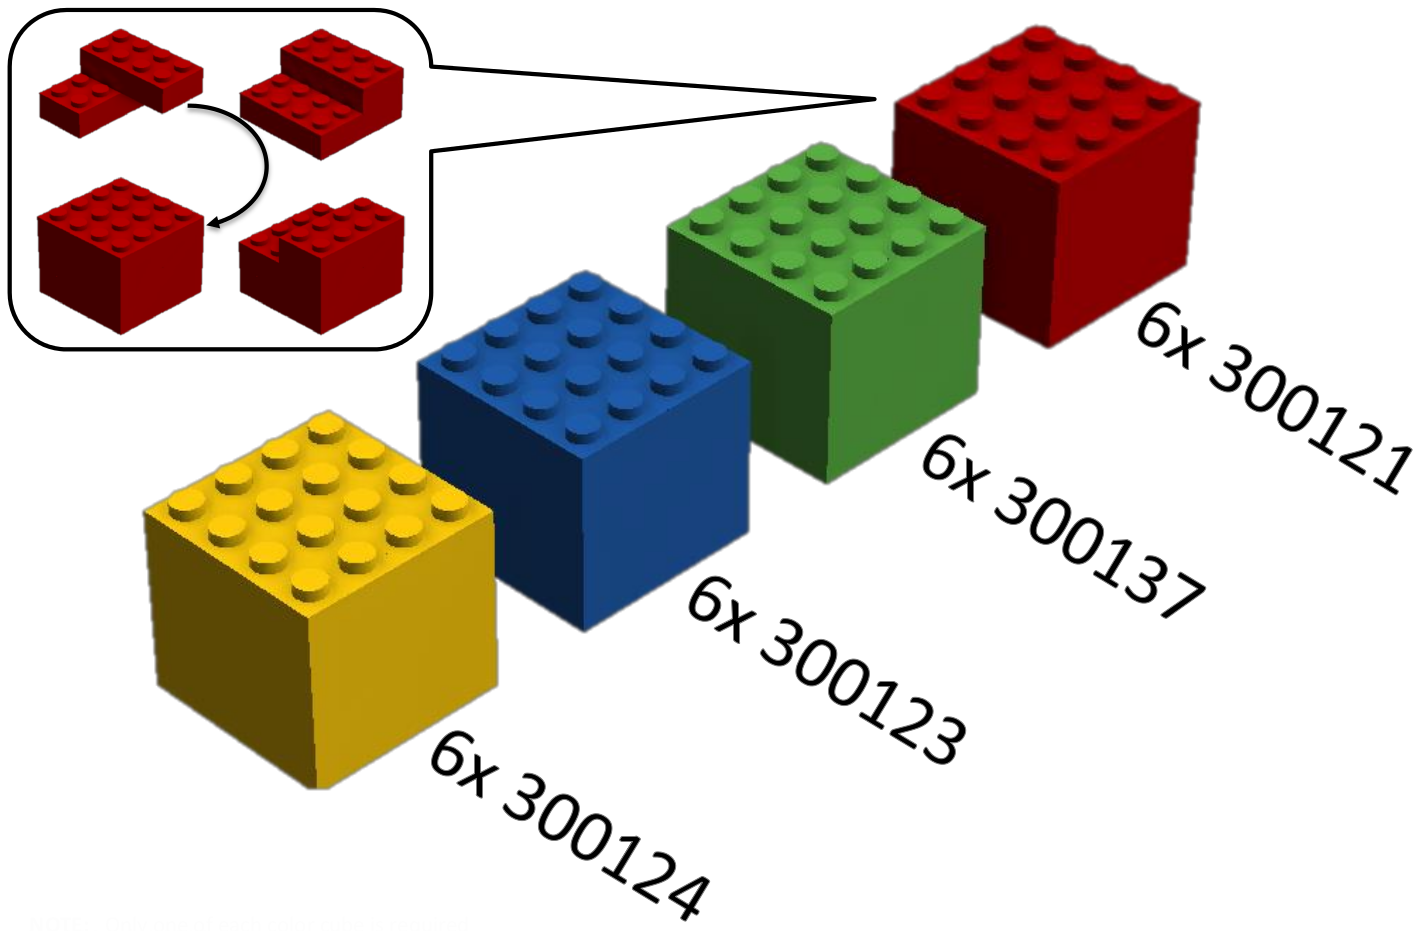 6. Pályaelemek 6.1. Kockák 6.1.1 Egy kocka hat (6) darab 2x4-es LEGO R elemből áll.